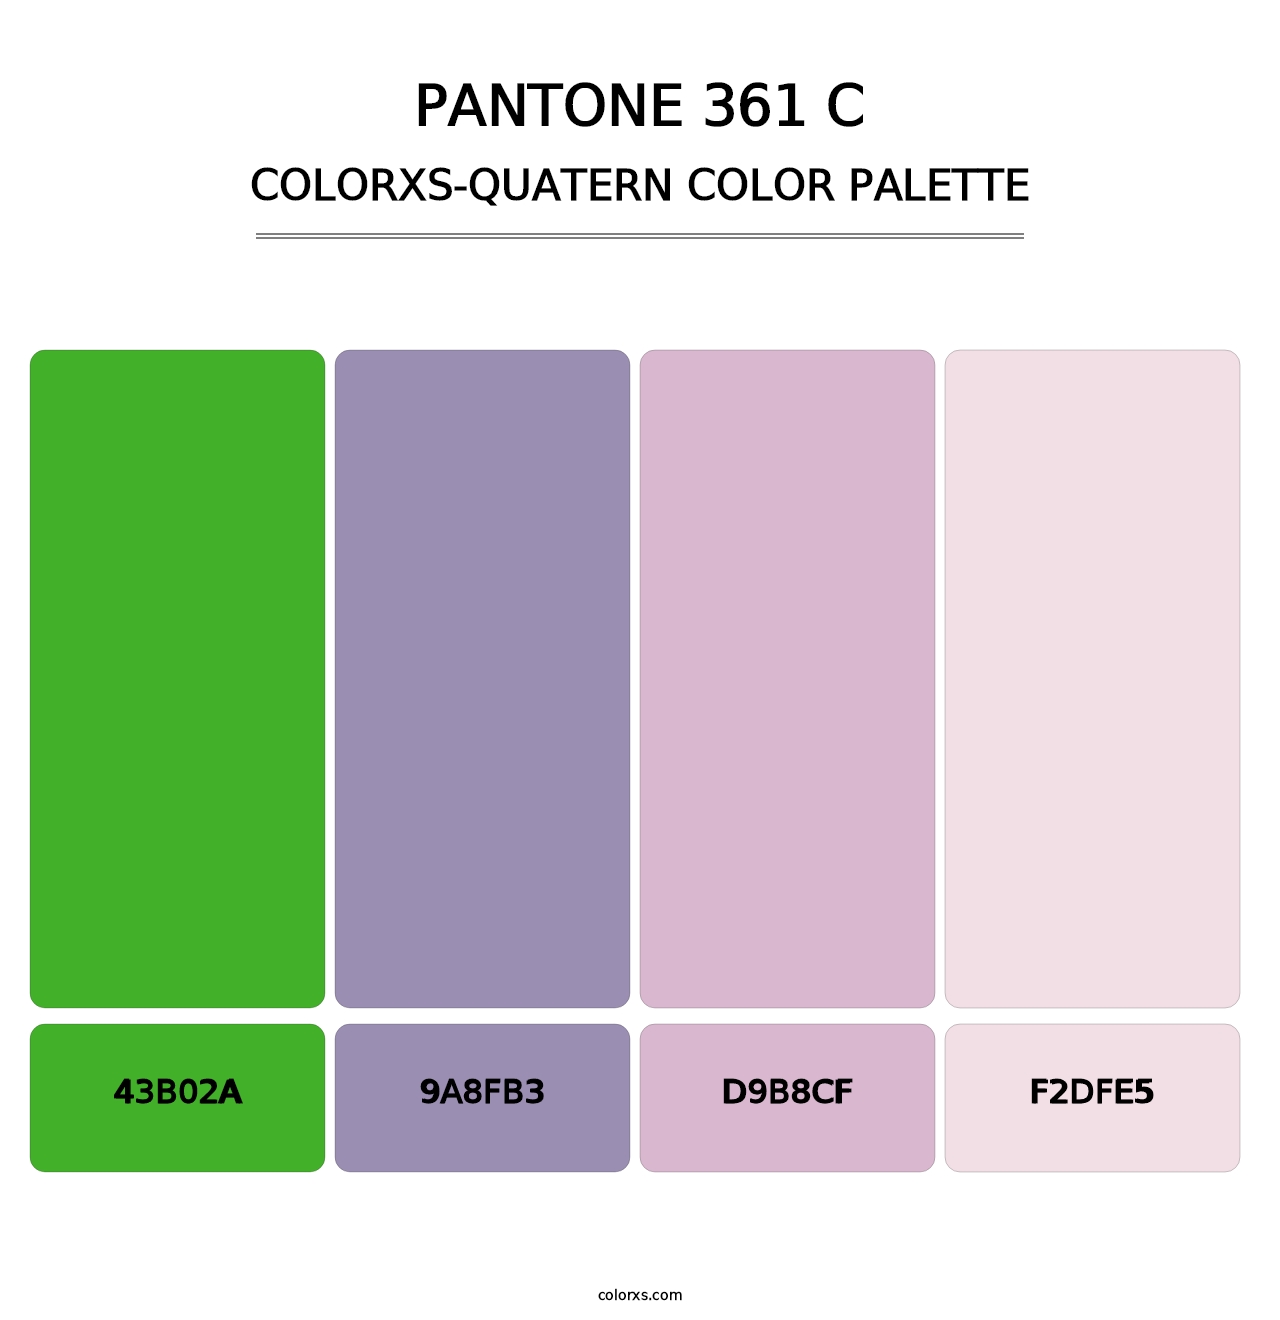 PANTONE 361 C - Colorxs Quatern Palette